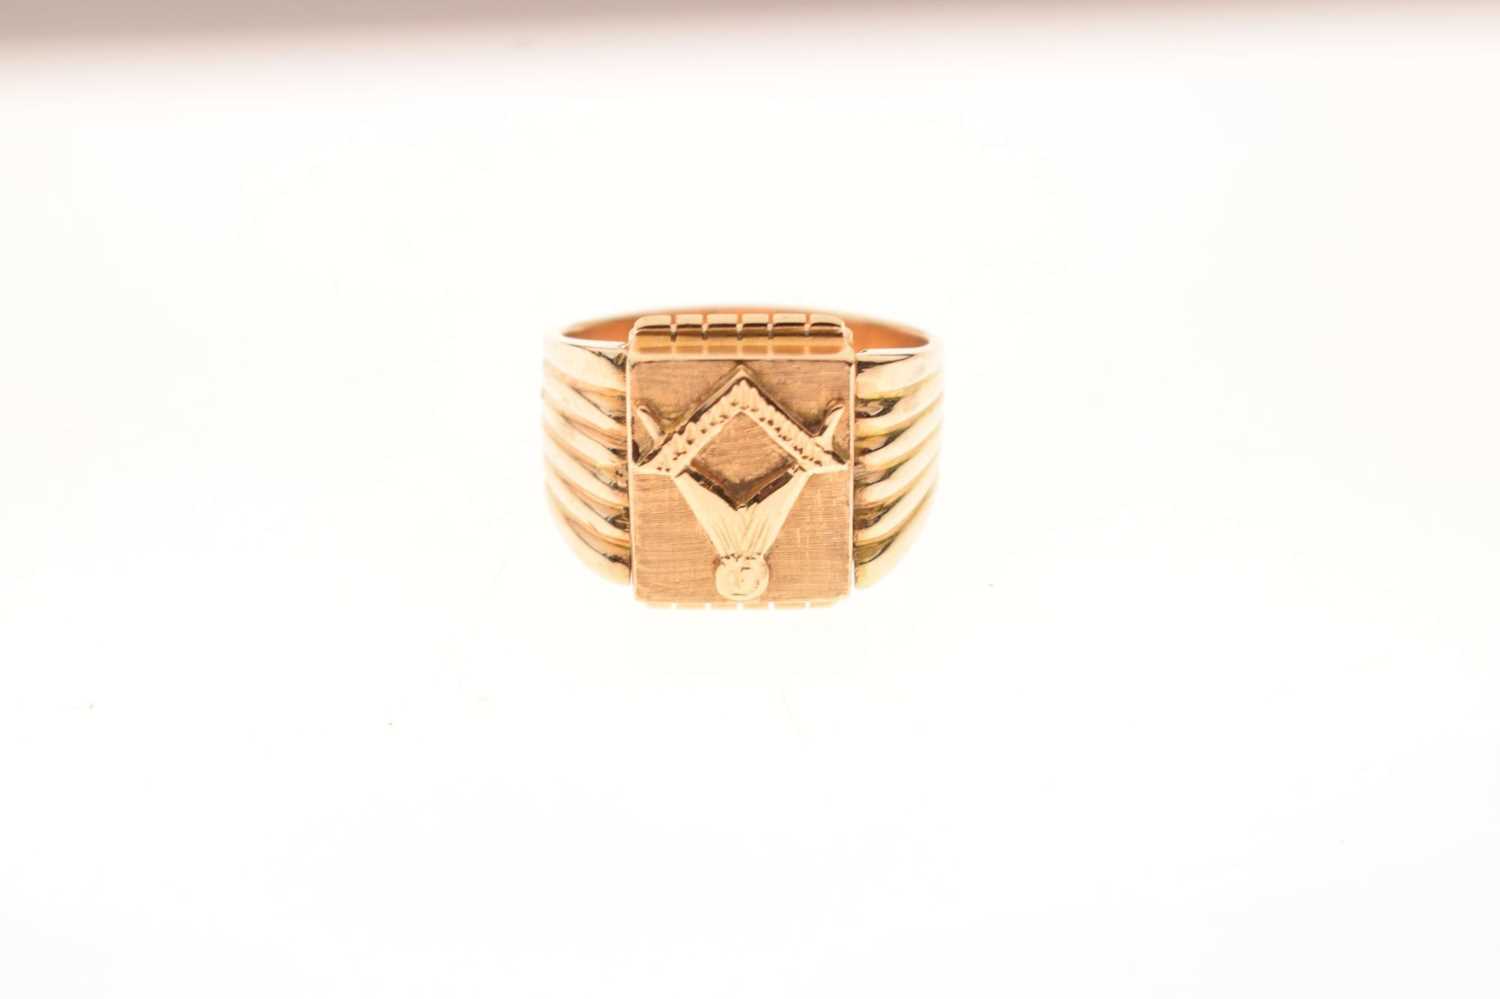 Masonic swivel signet ring - Image 2 of 8